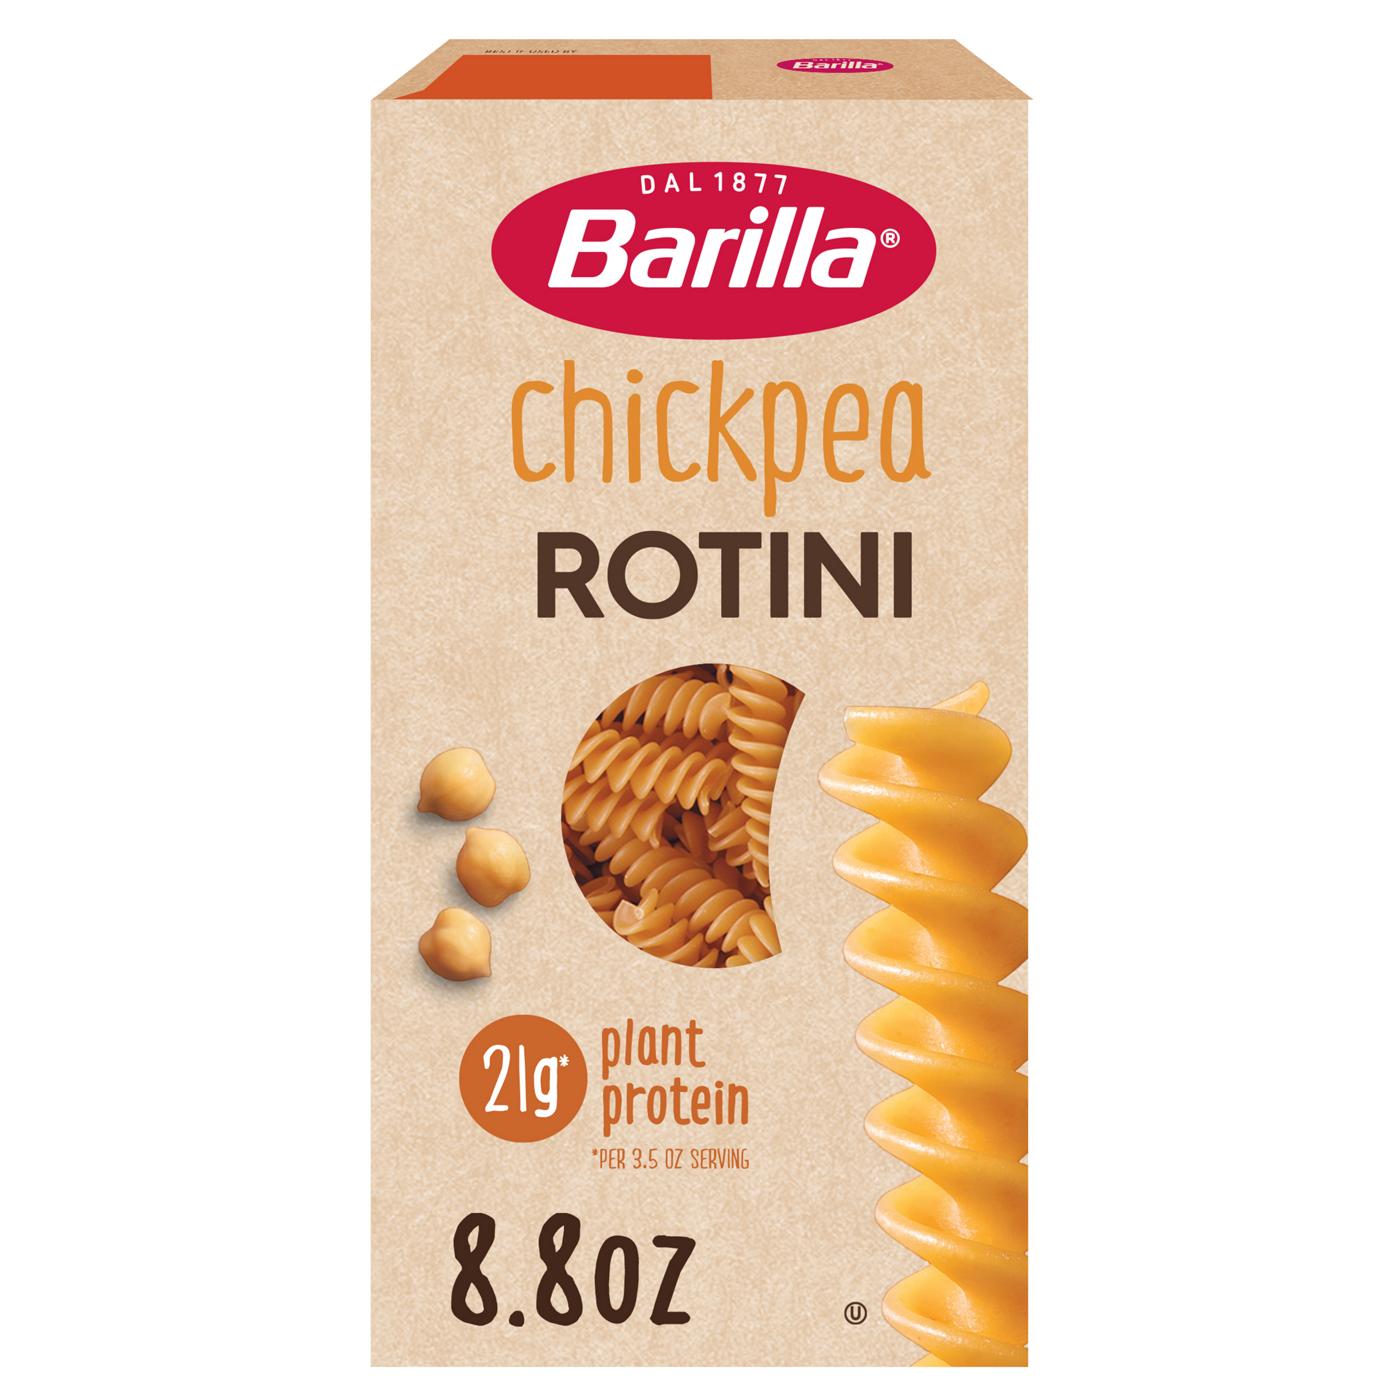 Barilla Chickpea Rotini Pasta - Shop Pasta at H-E-B